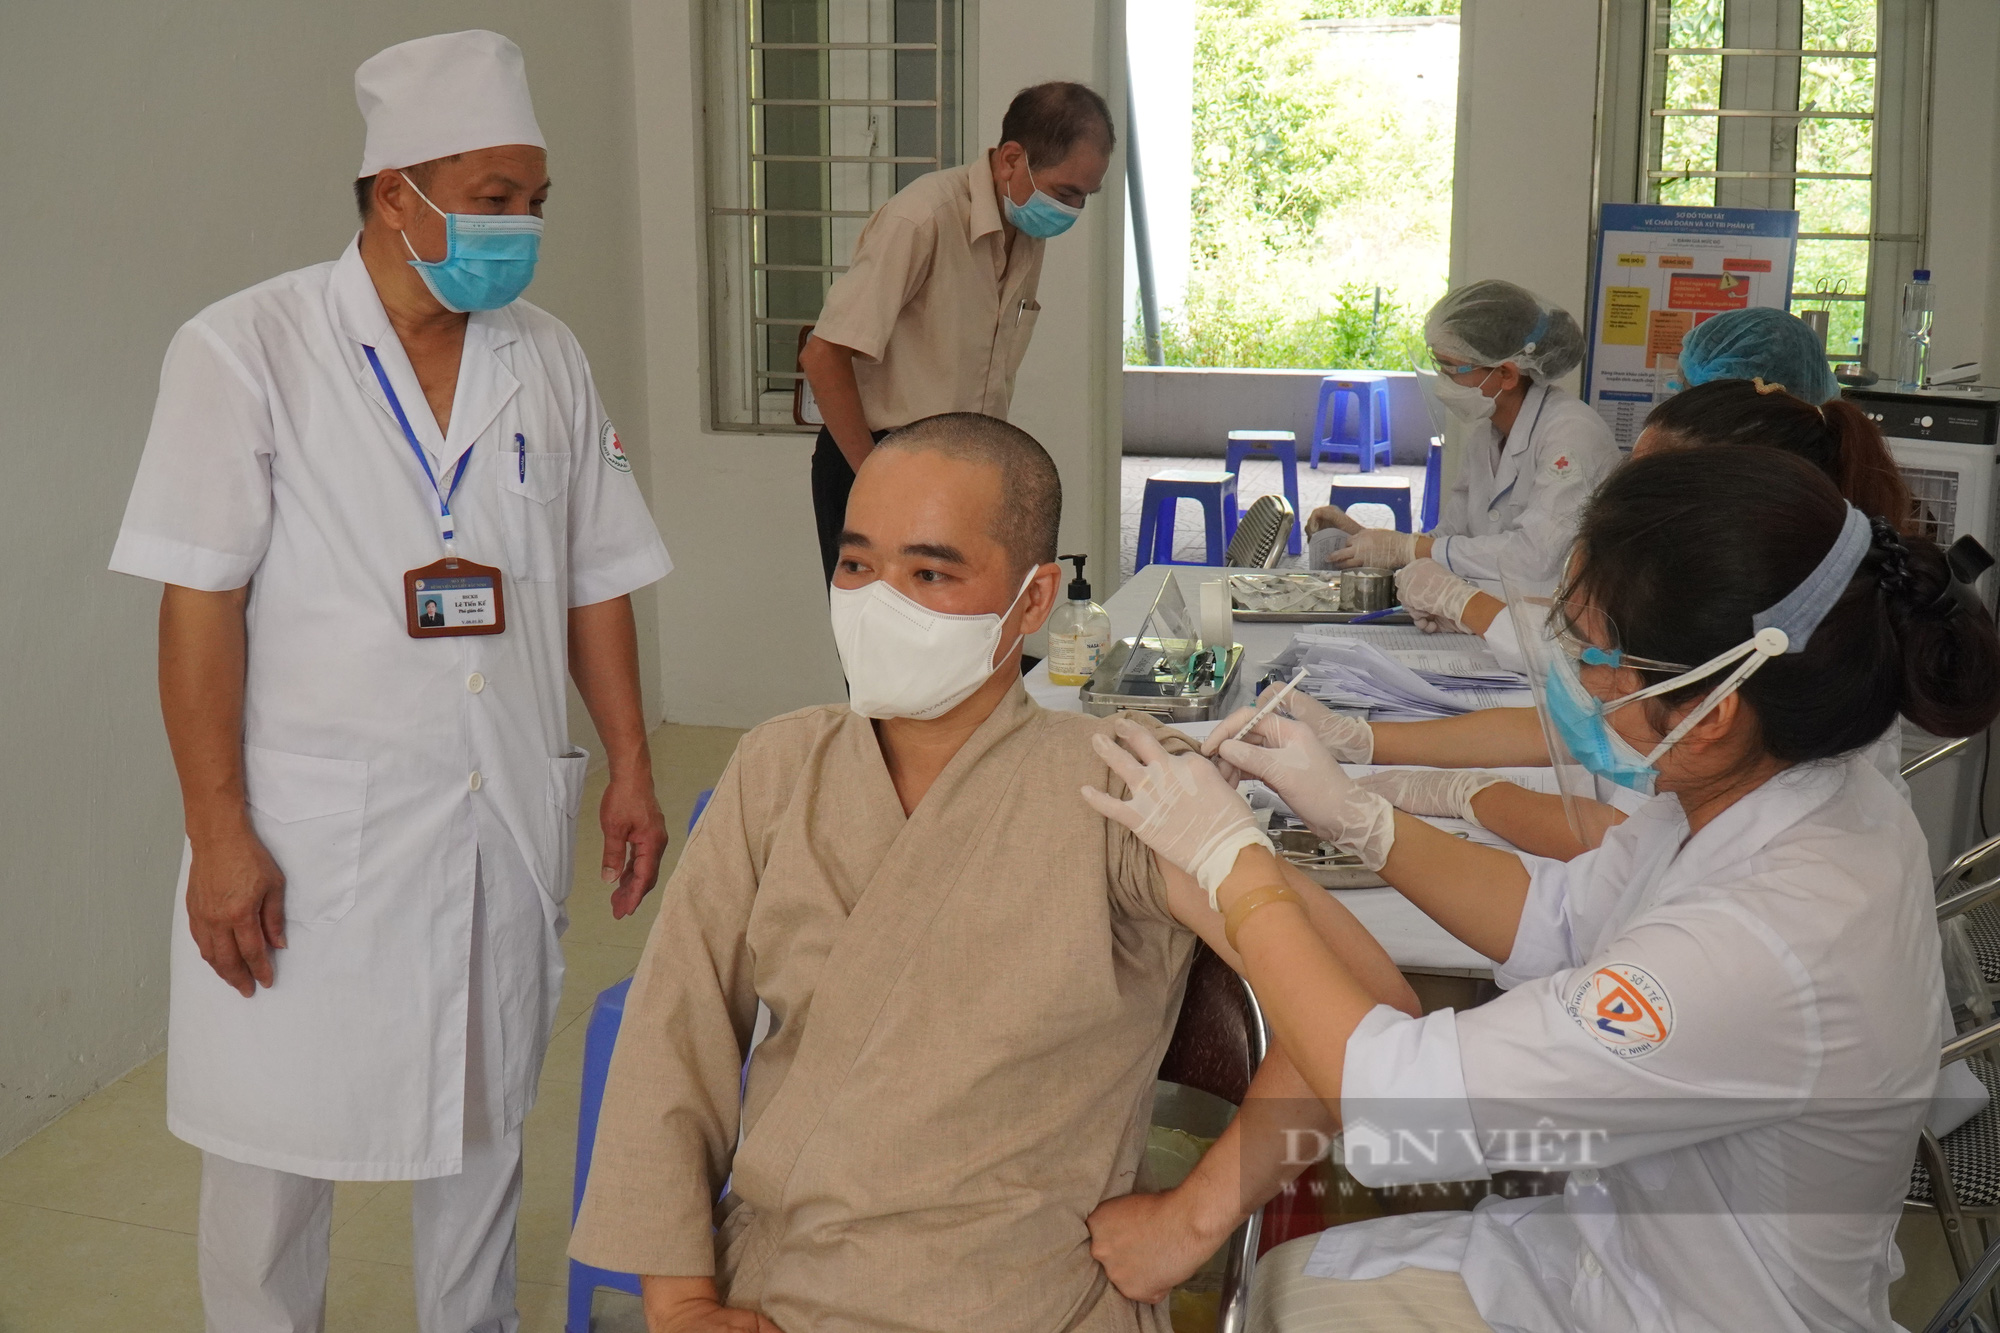 Bắc Ninh: Tiêm vắc xin phòng Covid-19 cho 130 chức sắc tôn giáo - Ảnh 3.